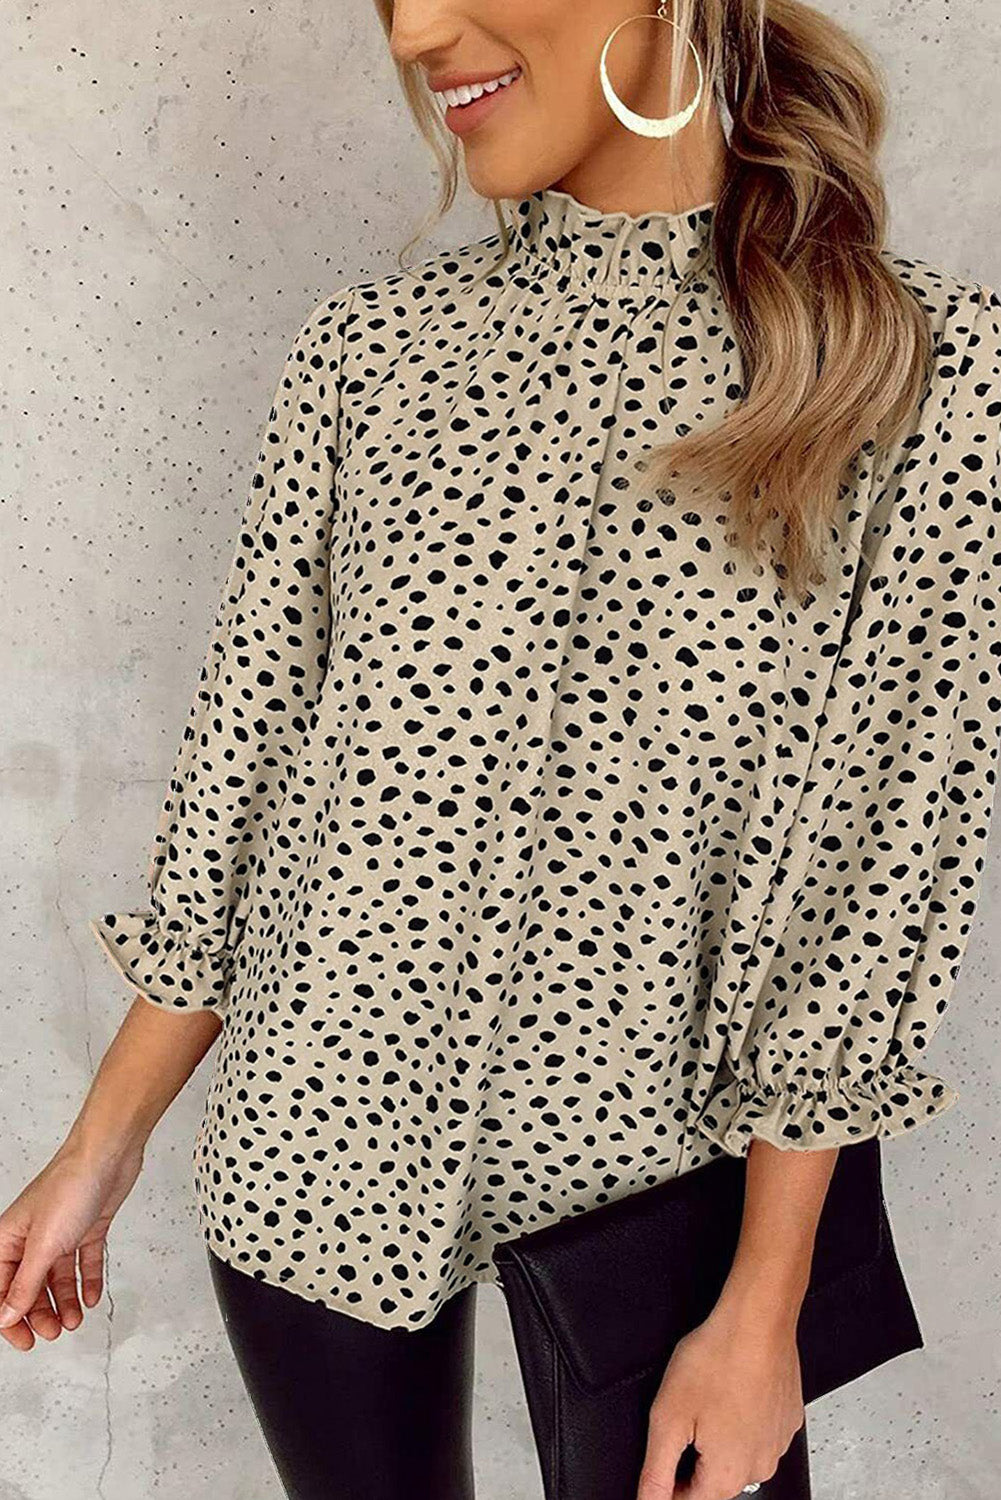 Kaki bluza z naborki in 3/4 rokavi v obliki geparda